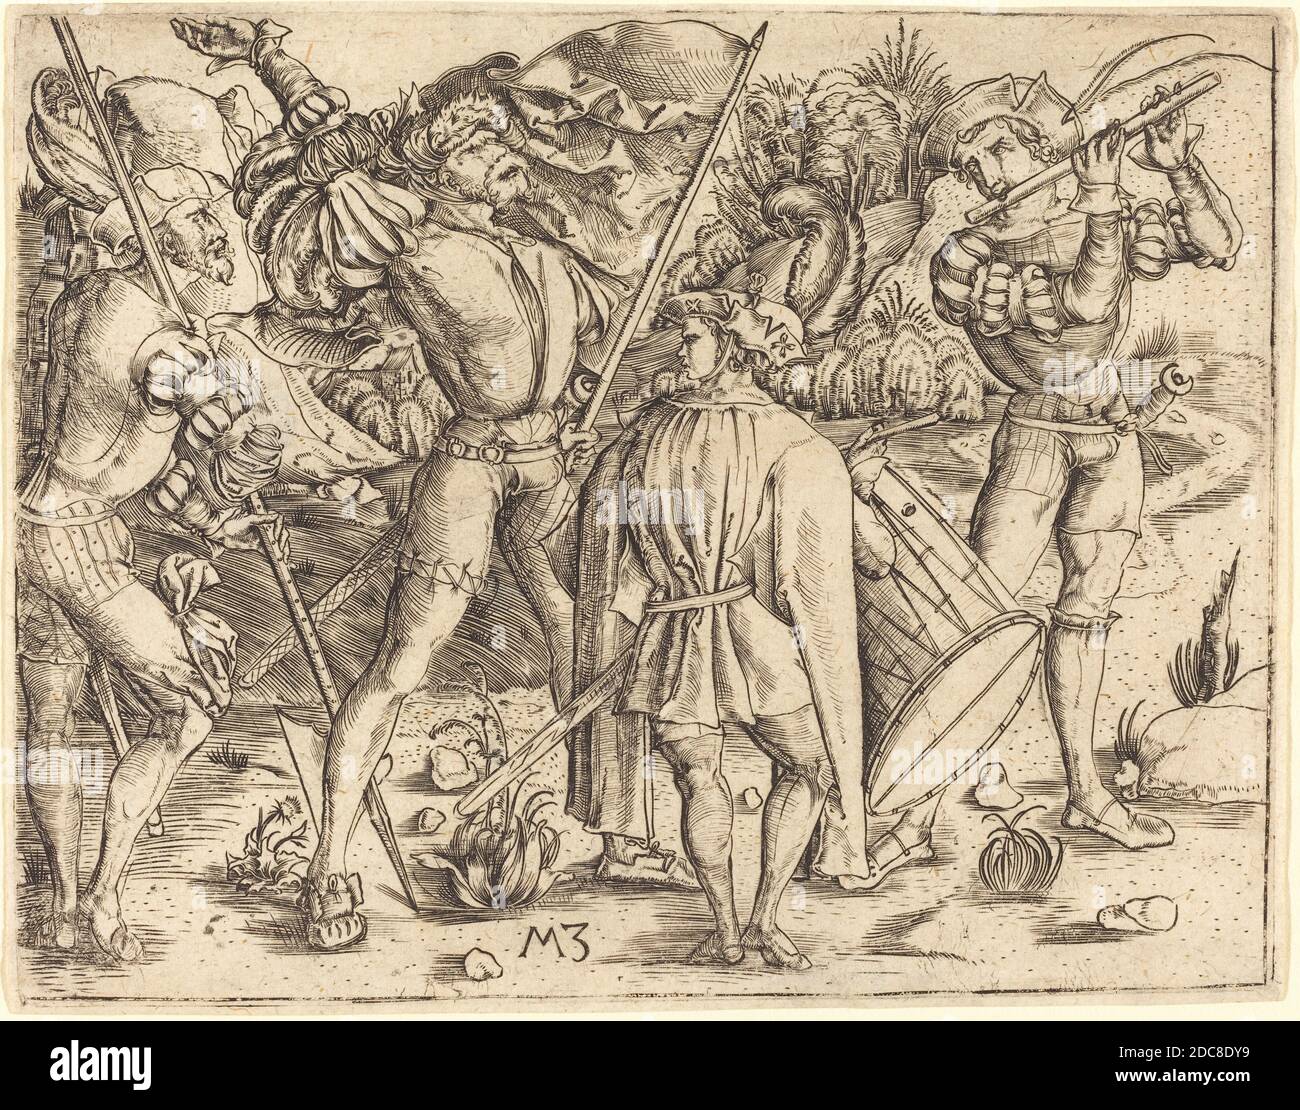 Master MZ, (Künstler), Deutsch, aktiv c. 1500, vier Soldaten, c. 1500, Gravur Stockfoto